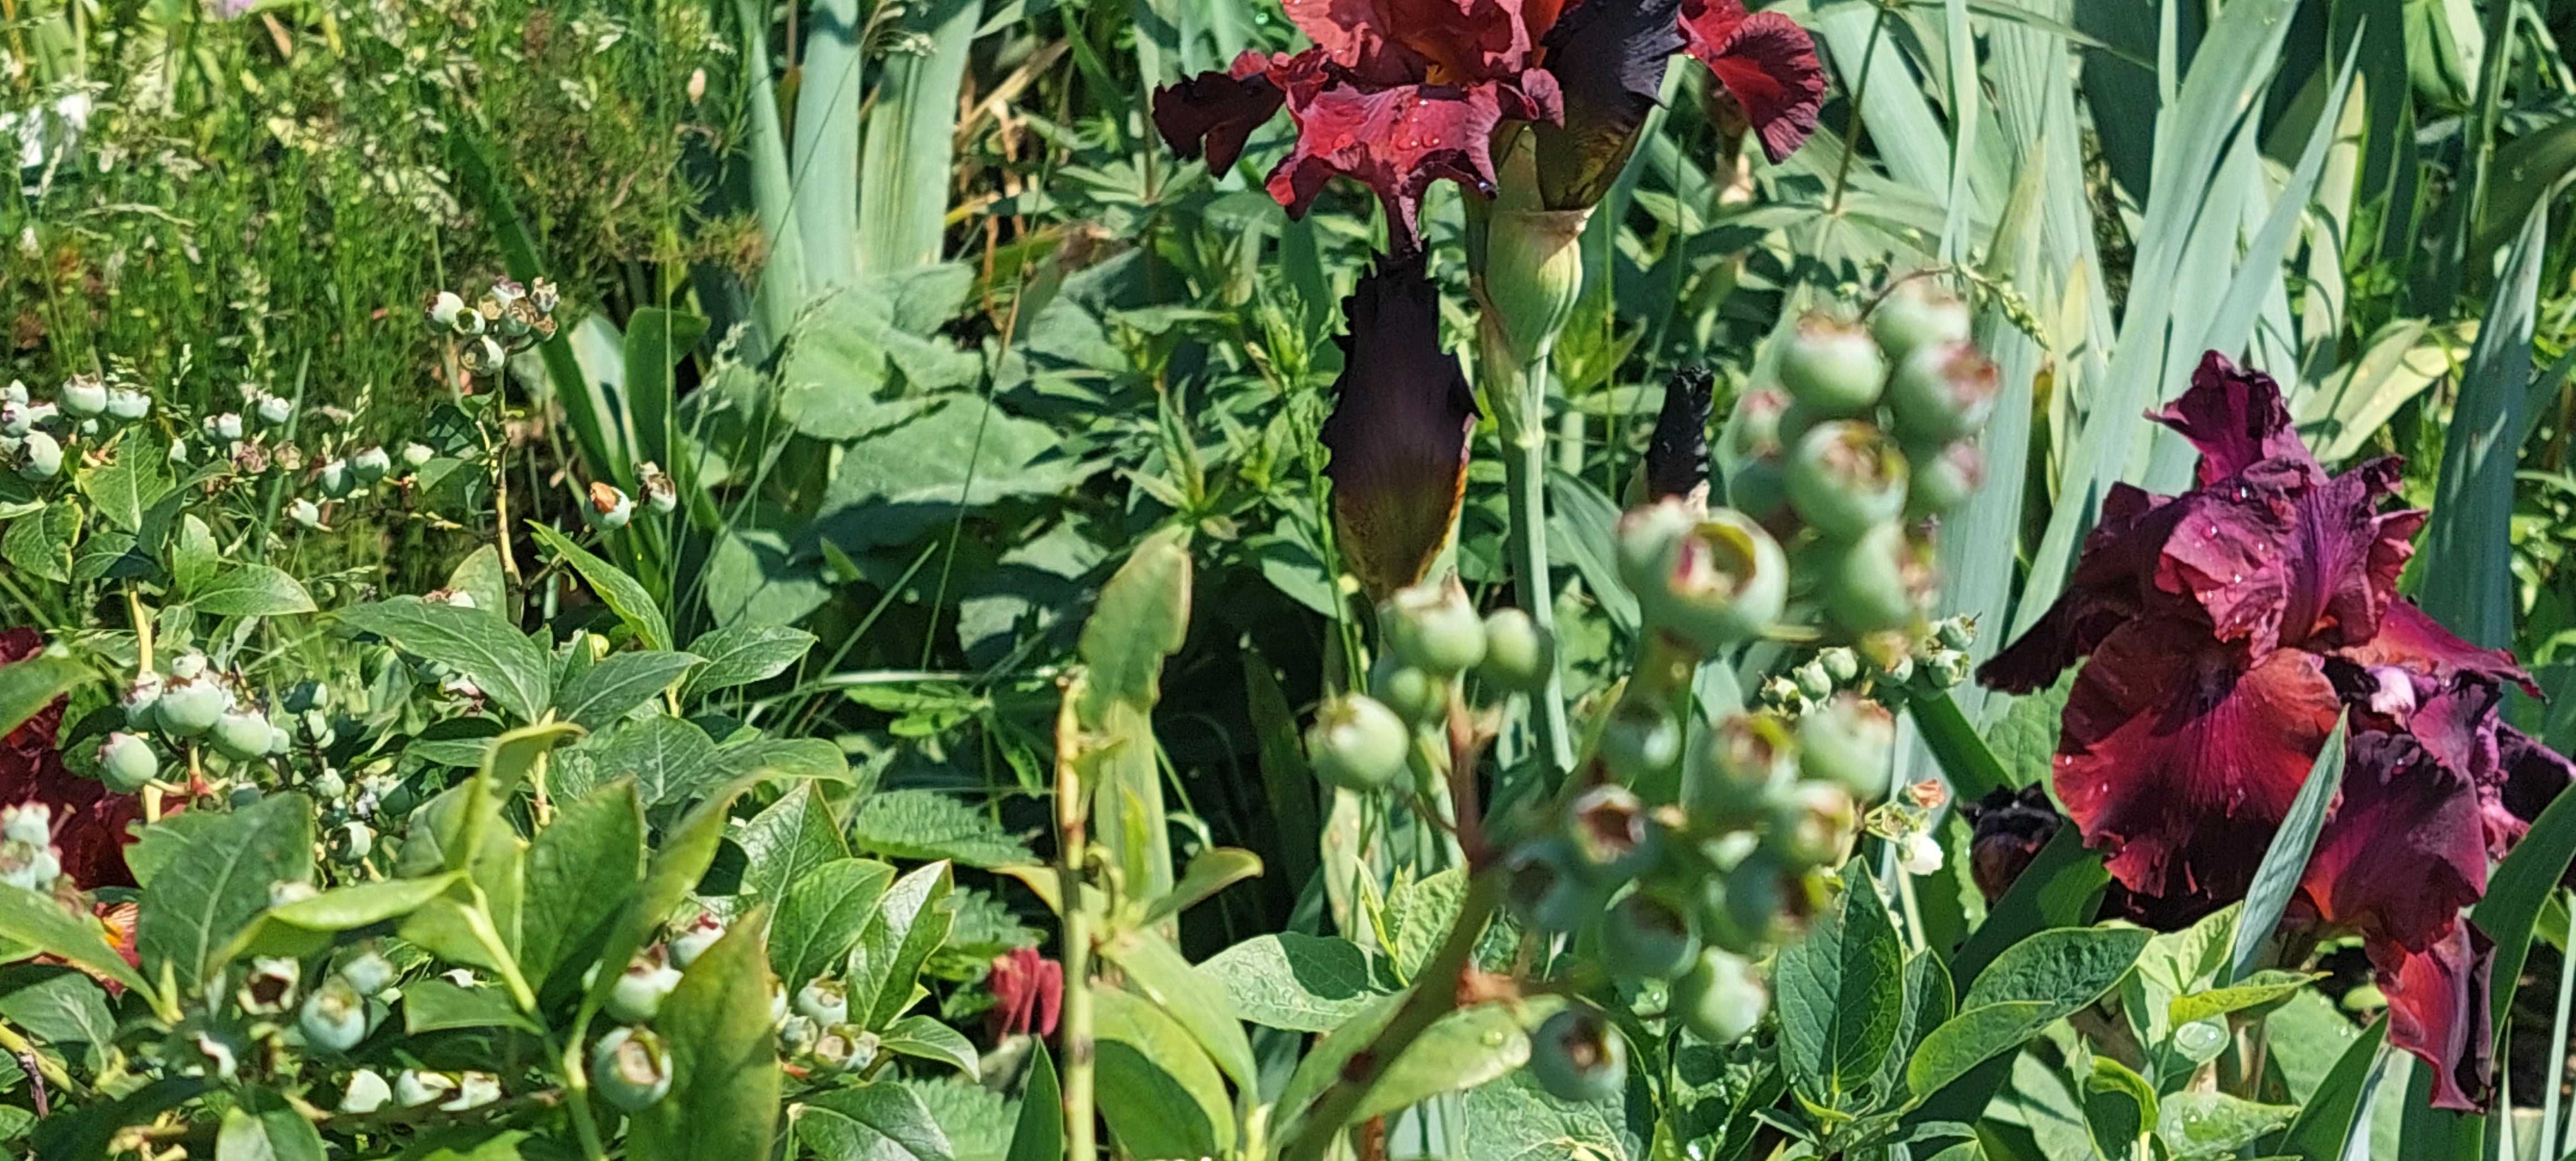 Irisi culori superbe grena rosu